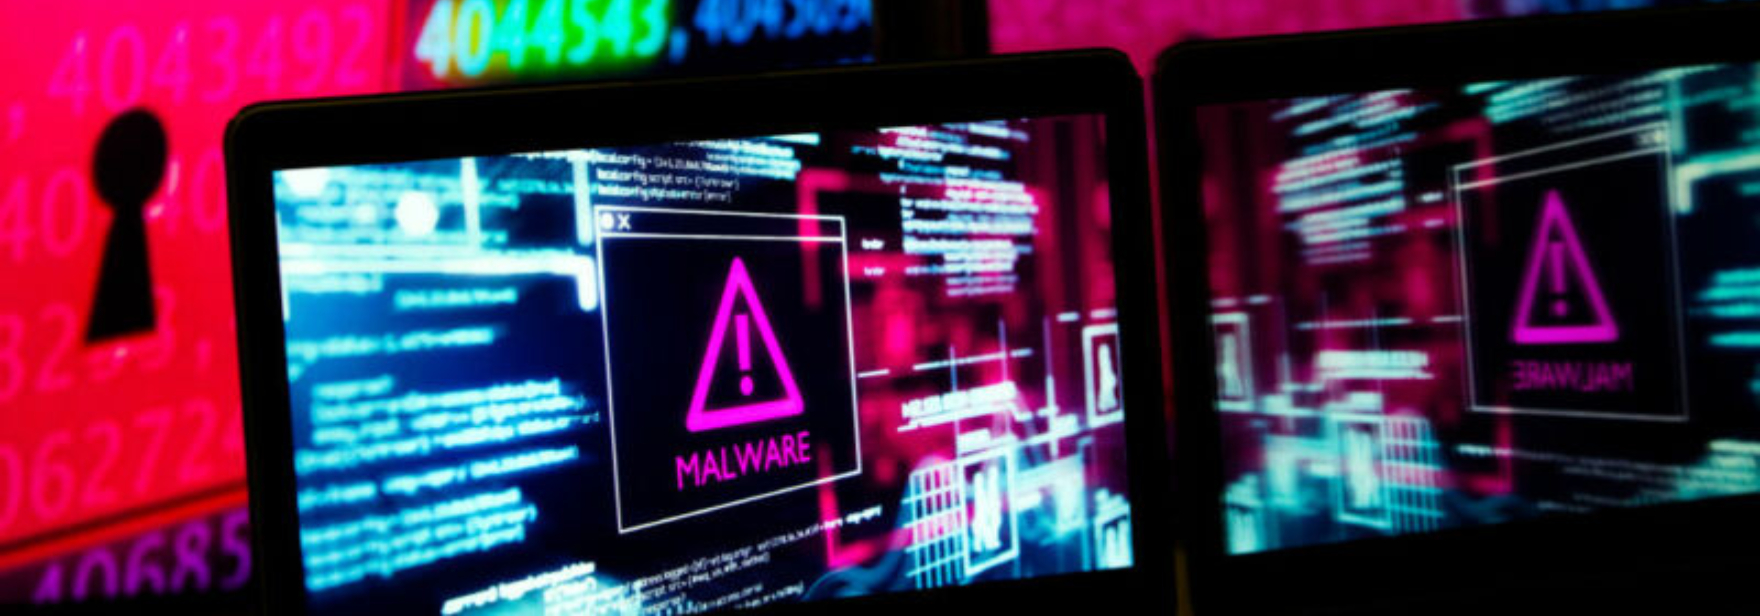 ФБР перечислило топ-30 уязвимостей, которыми наиболее часто пользуются хакеры. Некоторым из них уже много лет